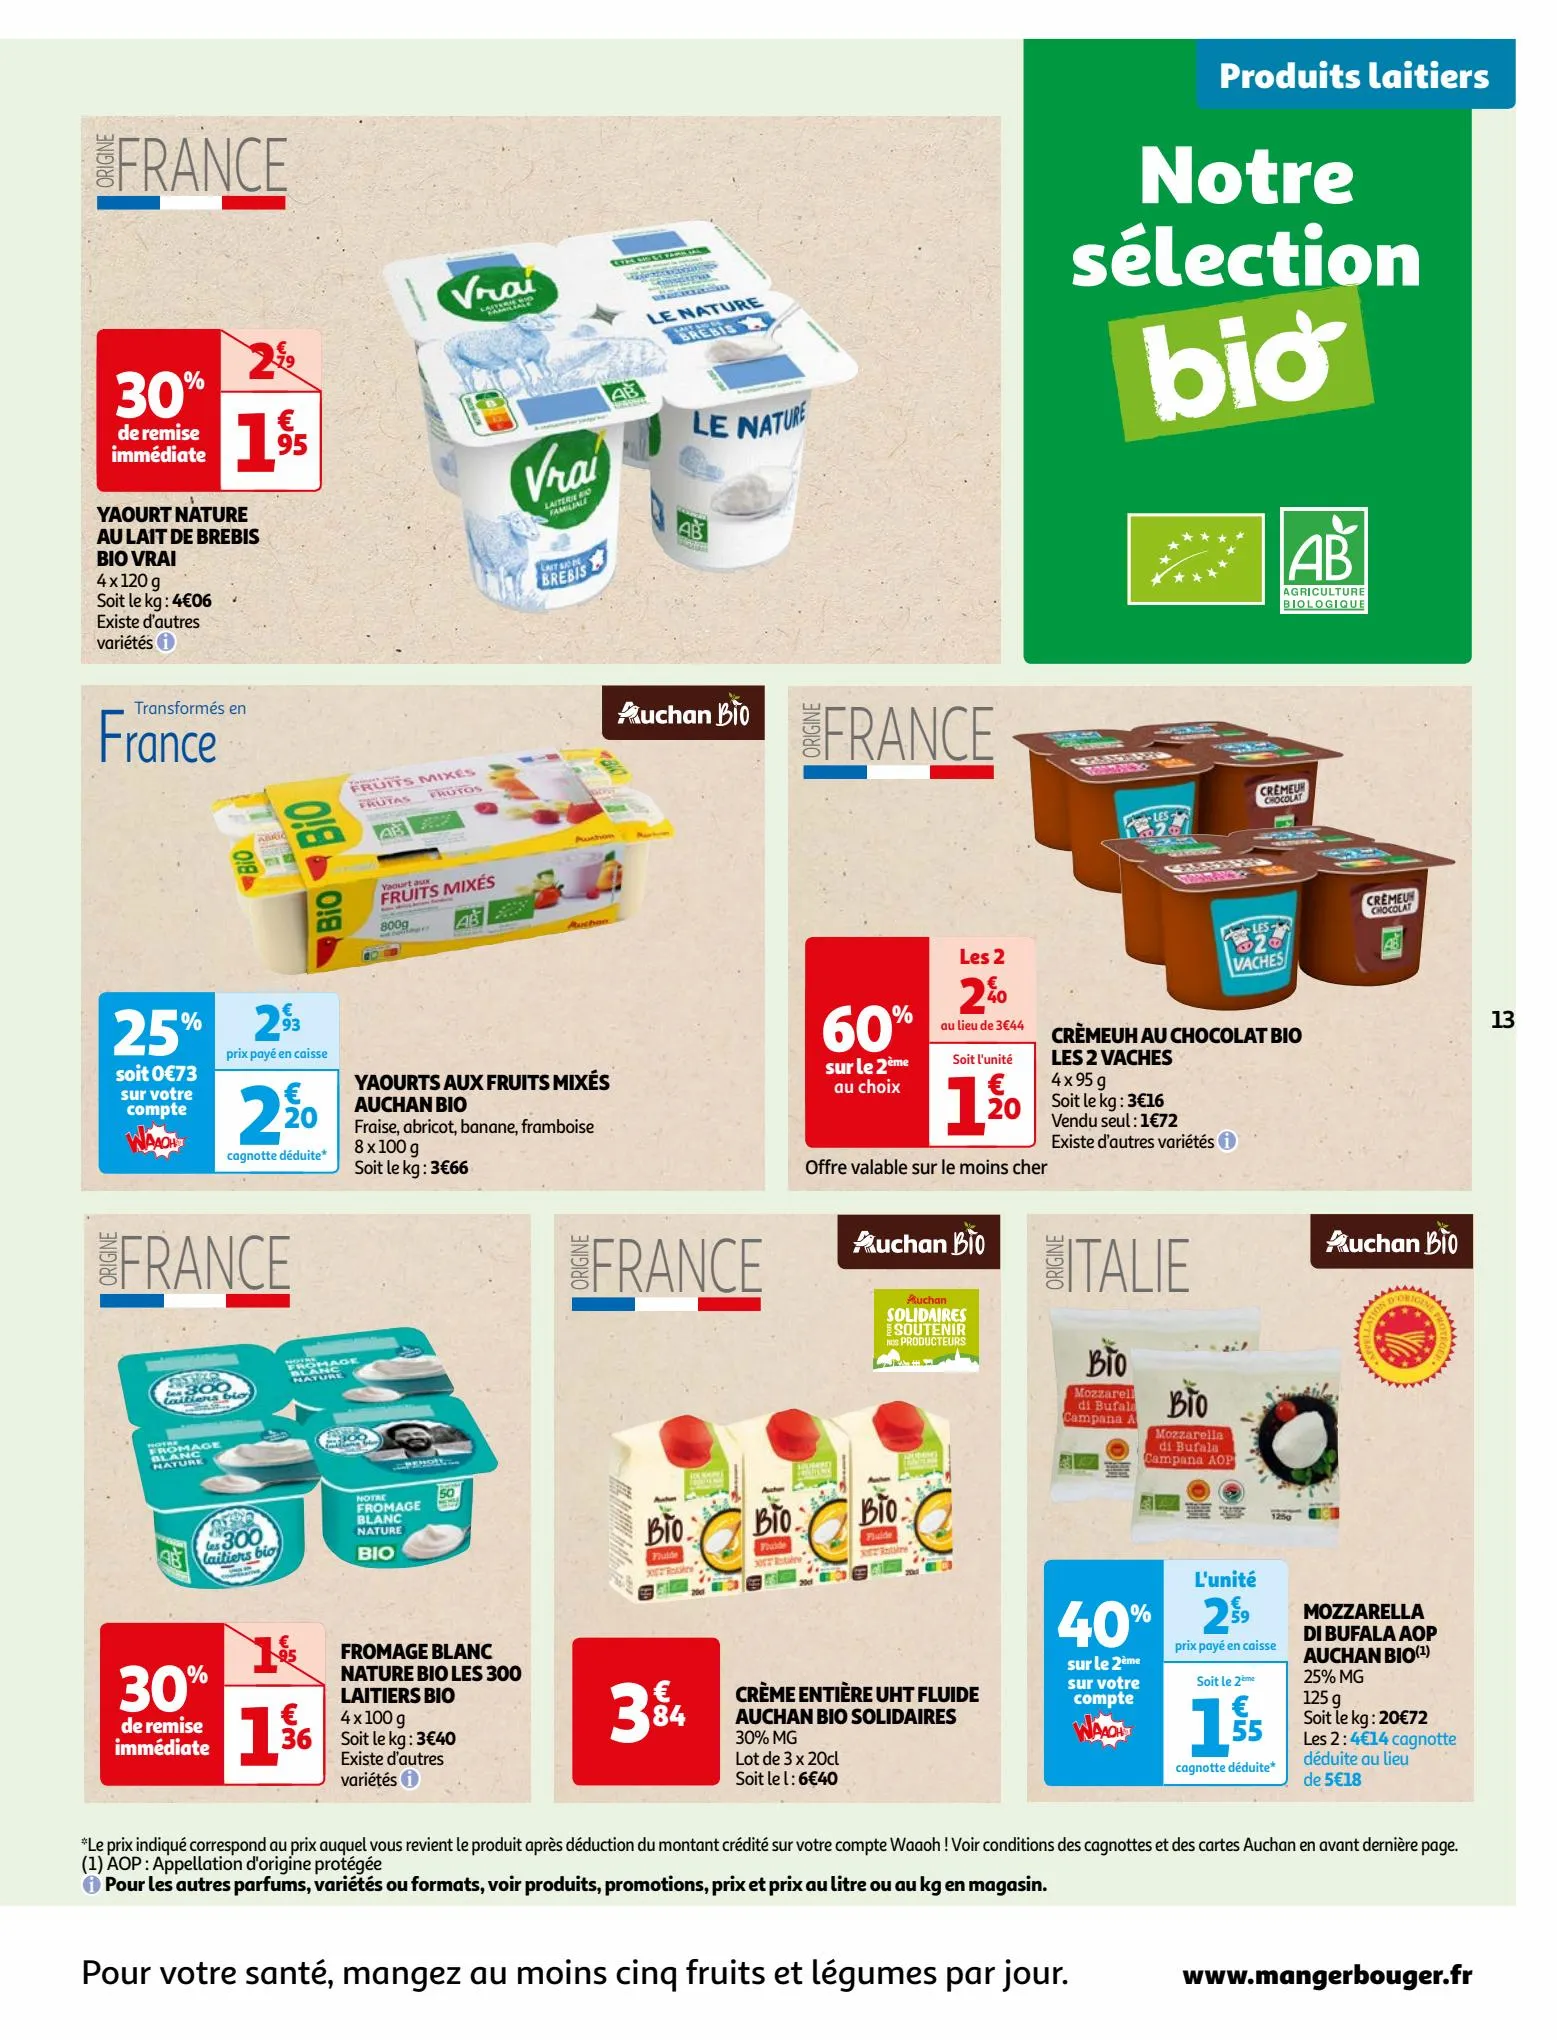 Catalogue Vos produits laitiers à petits prix !, page 00013